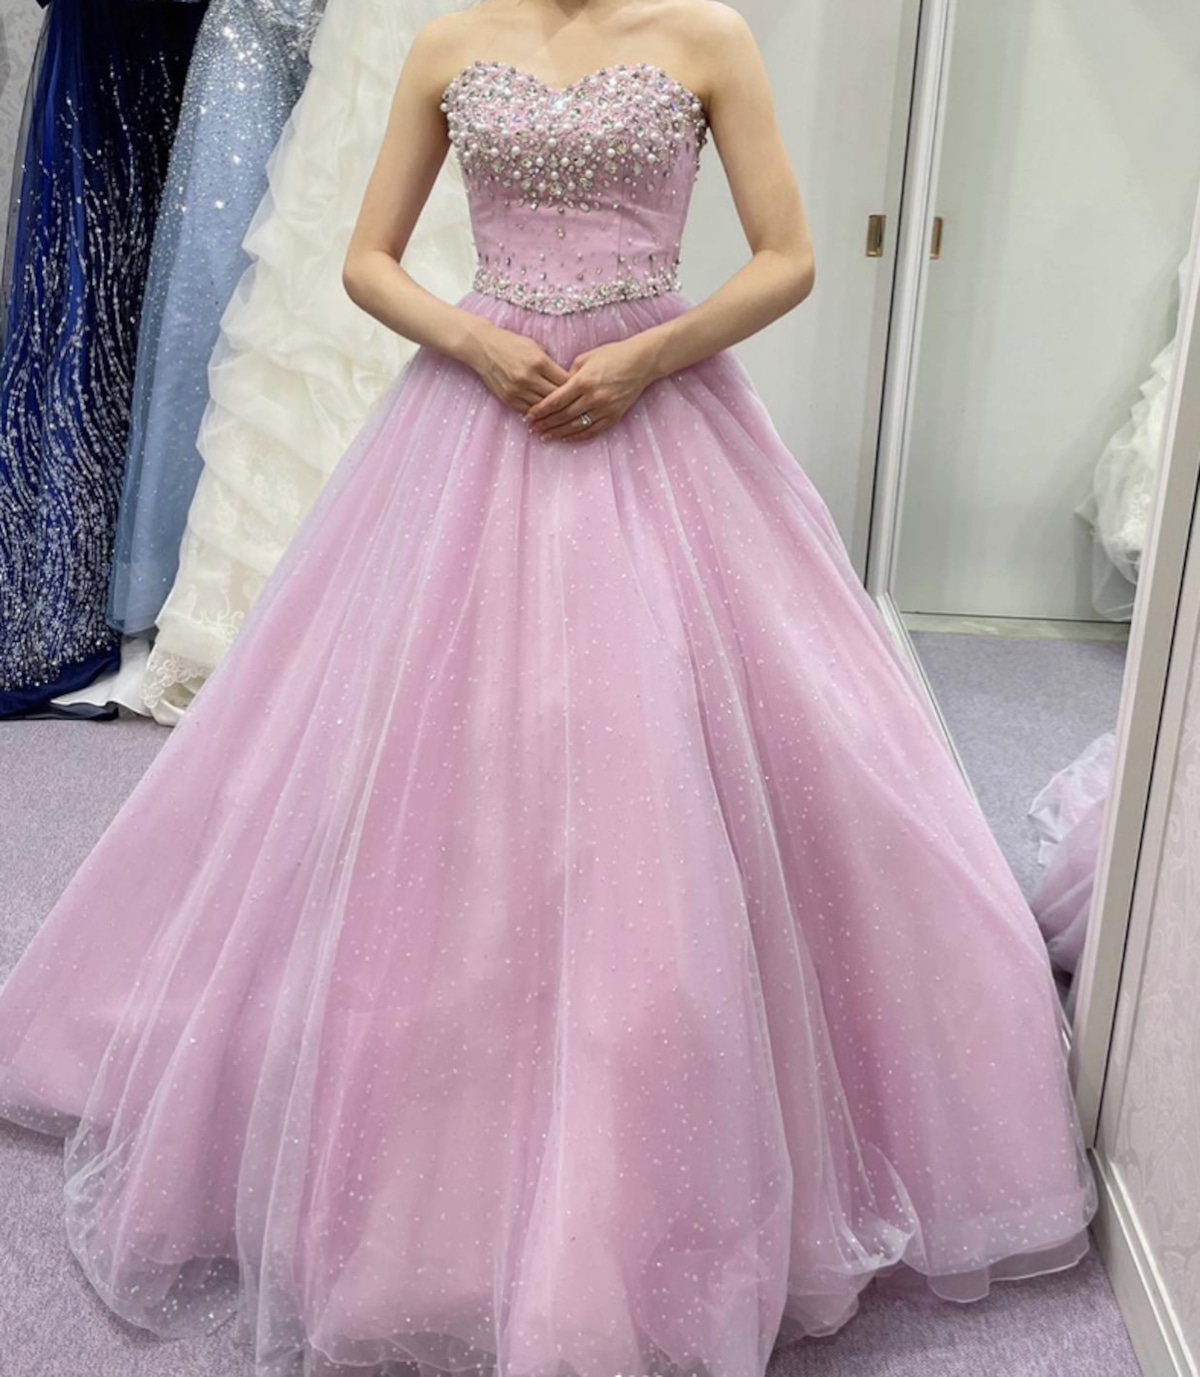 カラードレス 薄ピンク キラキラのハンドビーディング キラキラグリッターチュール 華やか 憧れのドレス | Cinderelladress  powered by BASE